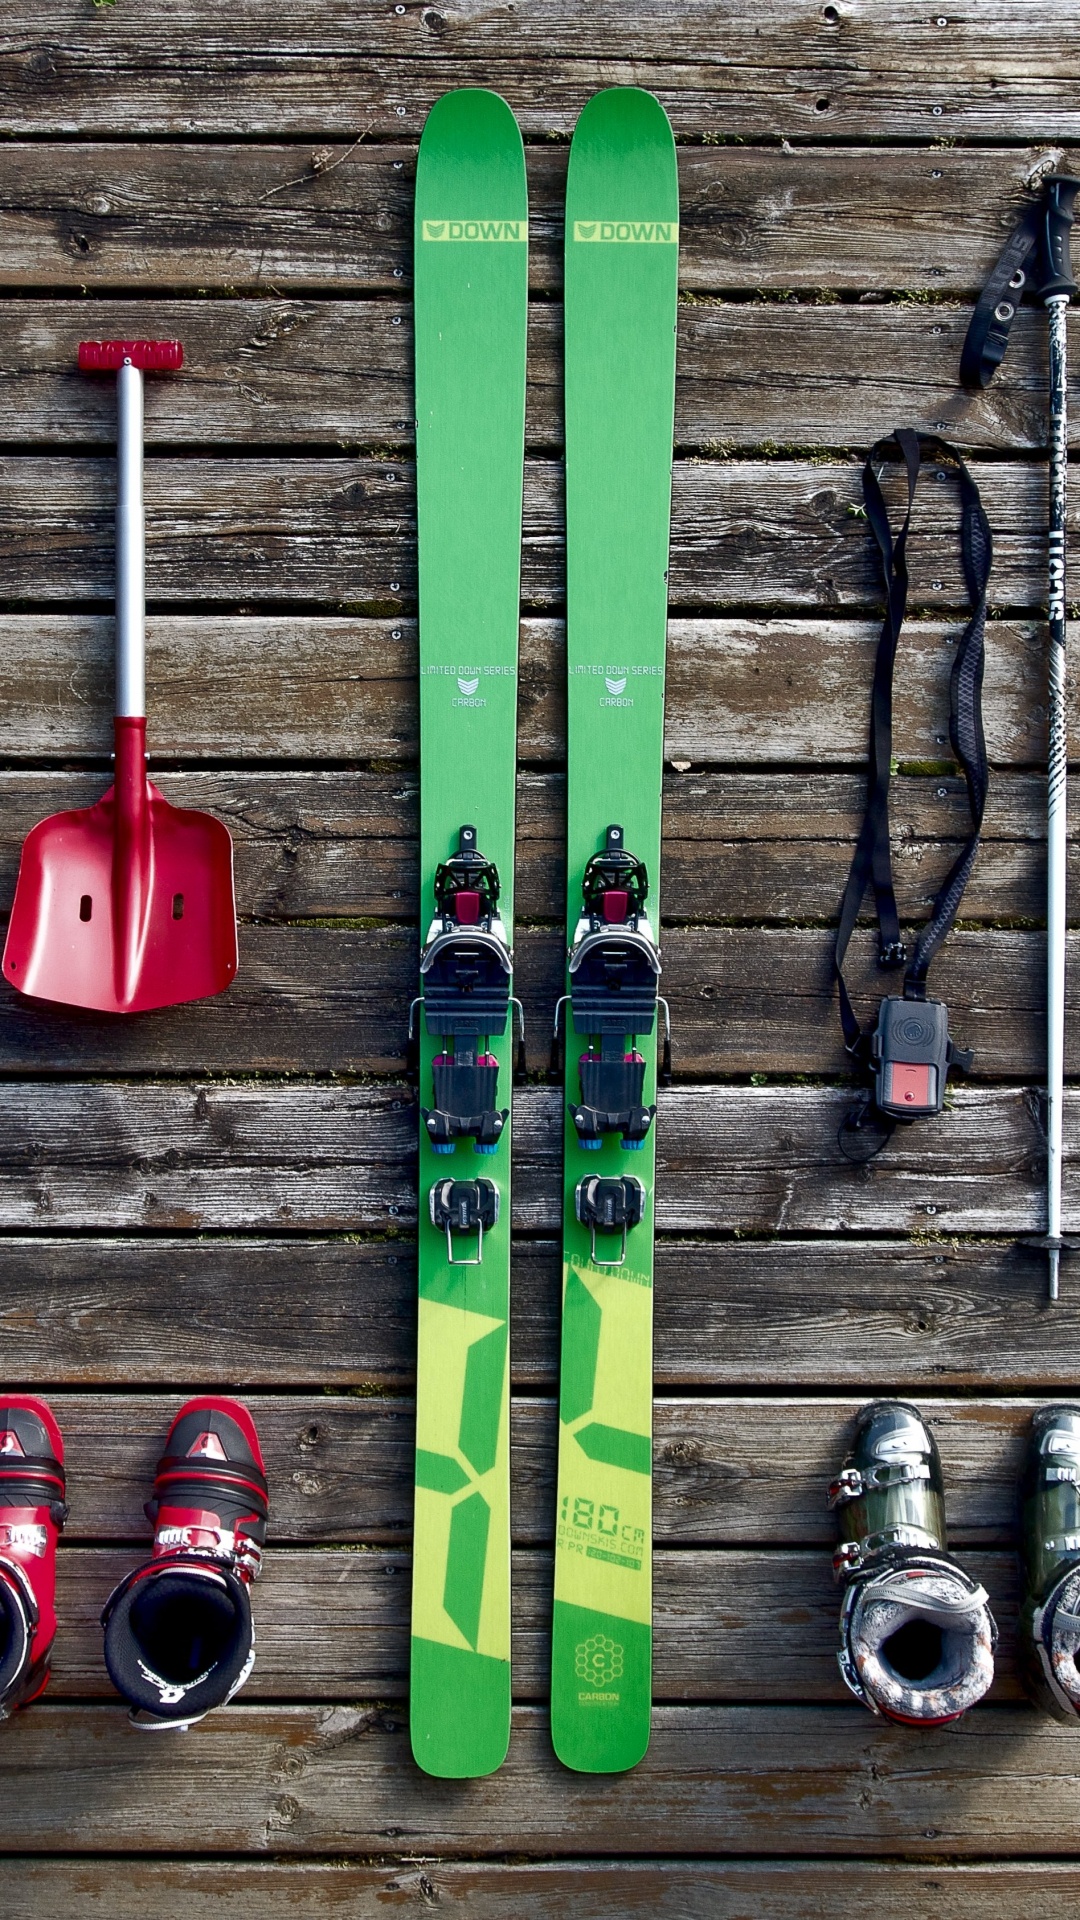 滑雪板, 滑板滑雪, 色彩, 木, 艺术 壁纸 1080x1920 允许